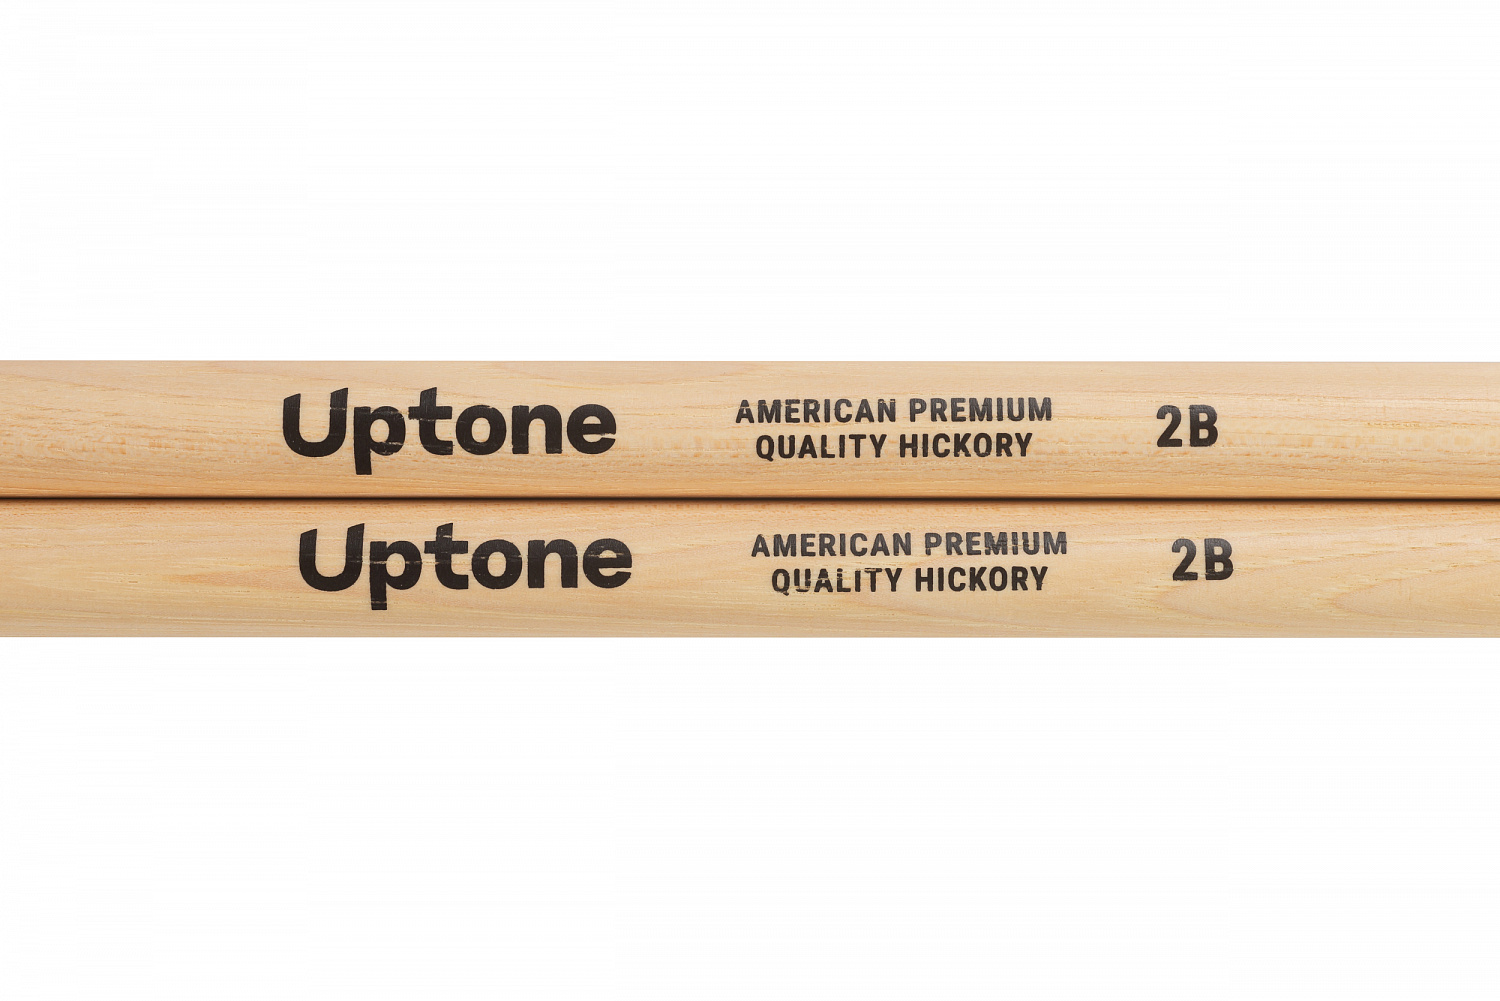 Uptone American Premium Quality Hickory 2B барабанные палочки, орех, цвет натуральный